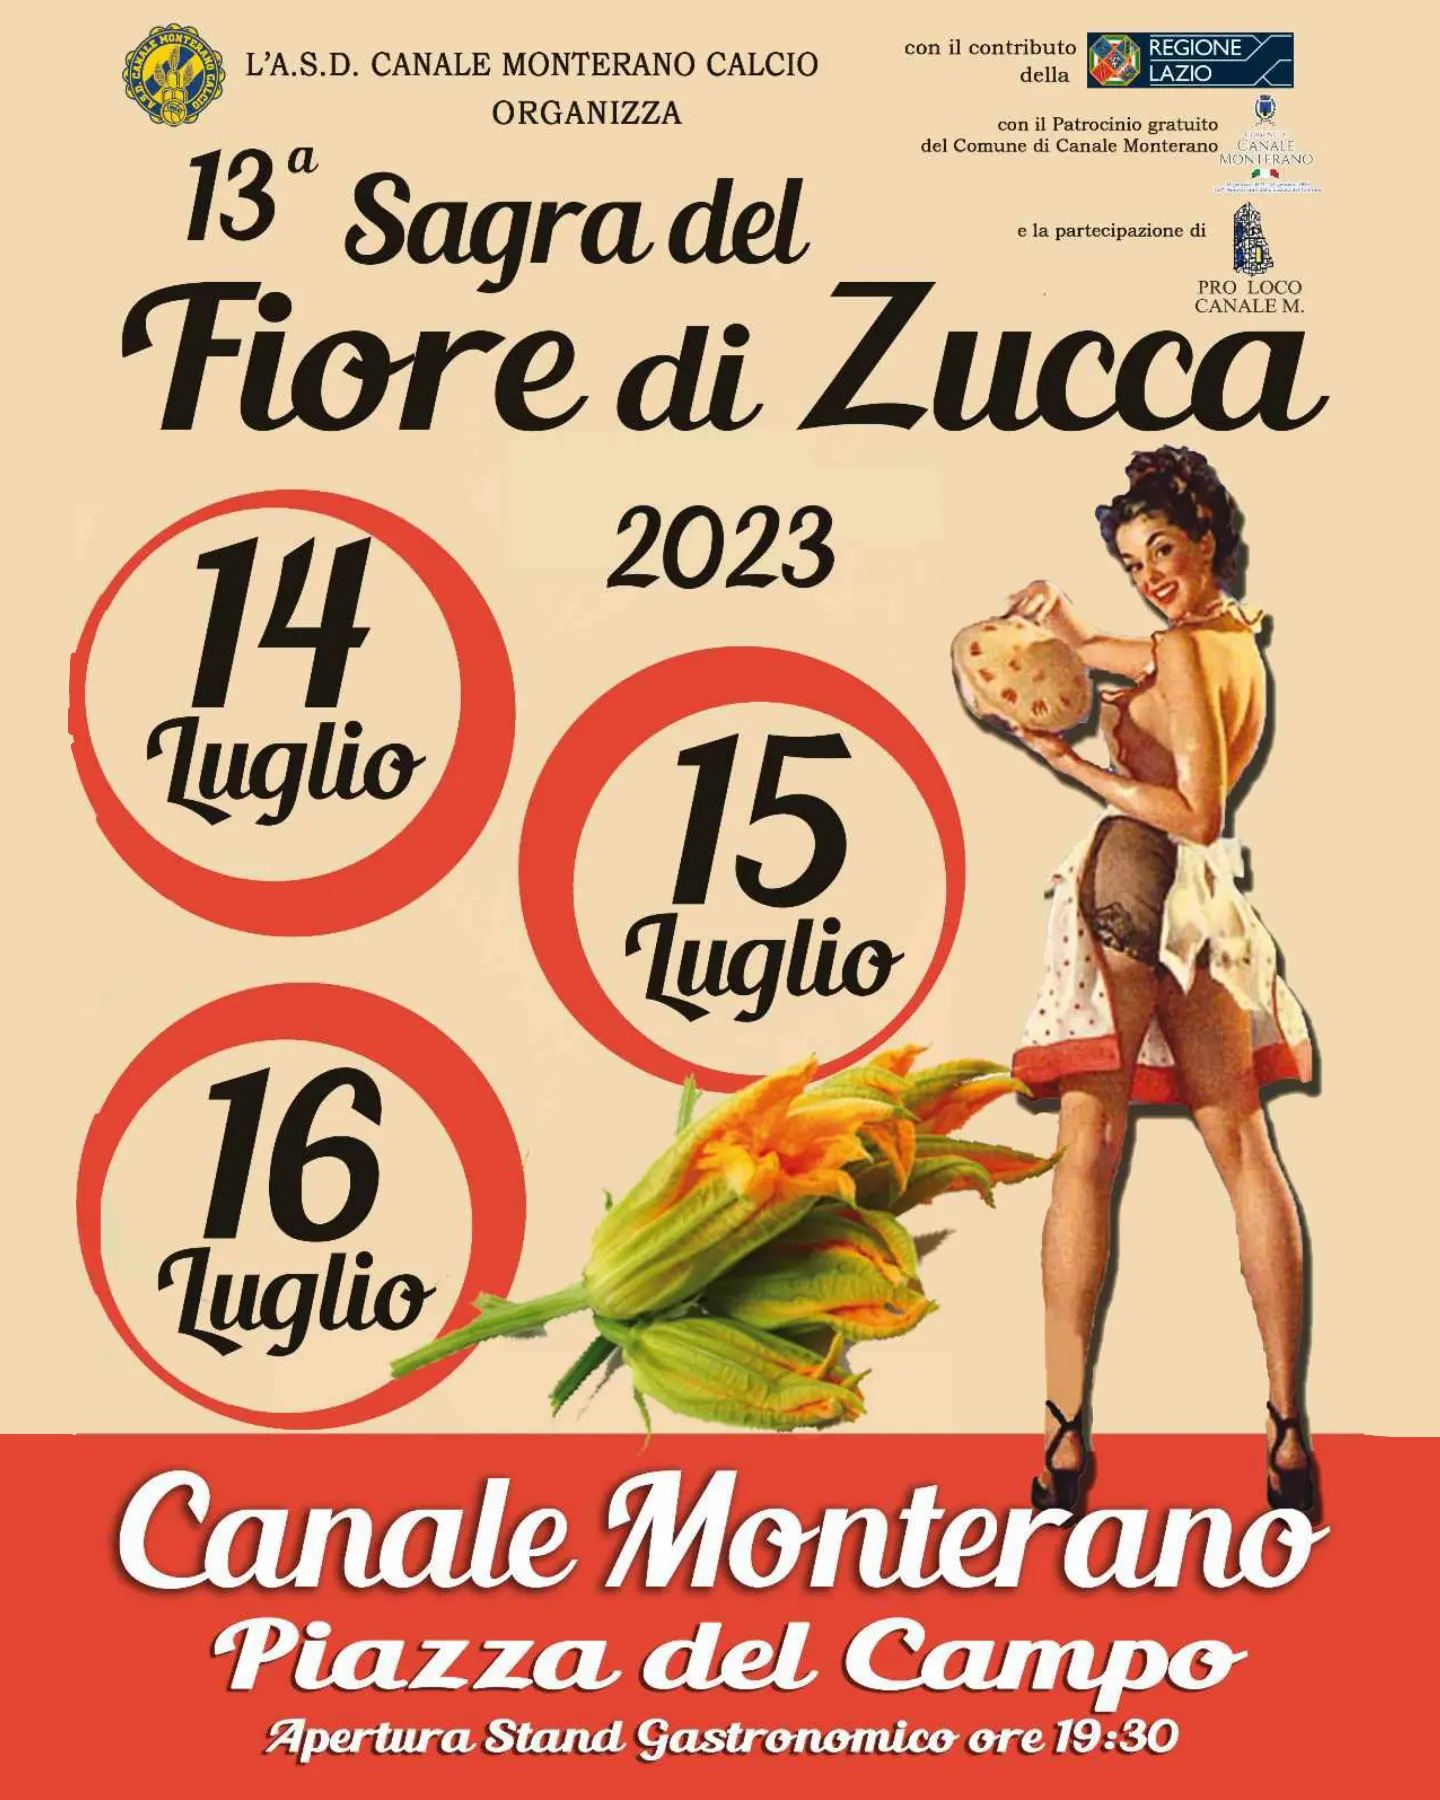 13° Sagra del Fiore di Zucca di Canale Monterano 14-15-16 luglio 2023, piazza del Campo, apertura stand gastronomico ore 19:30